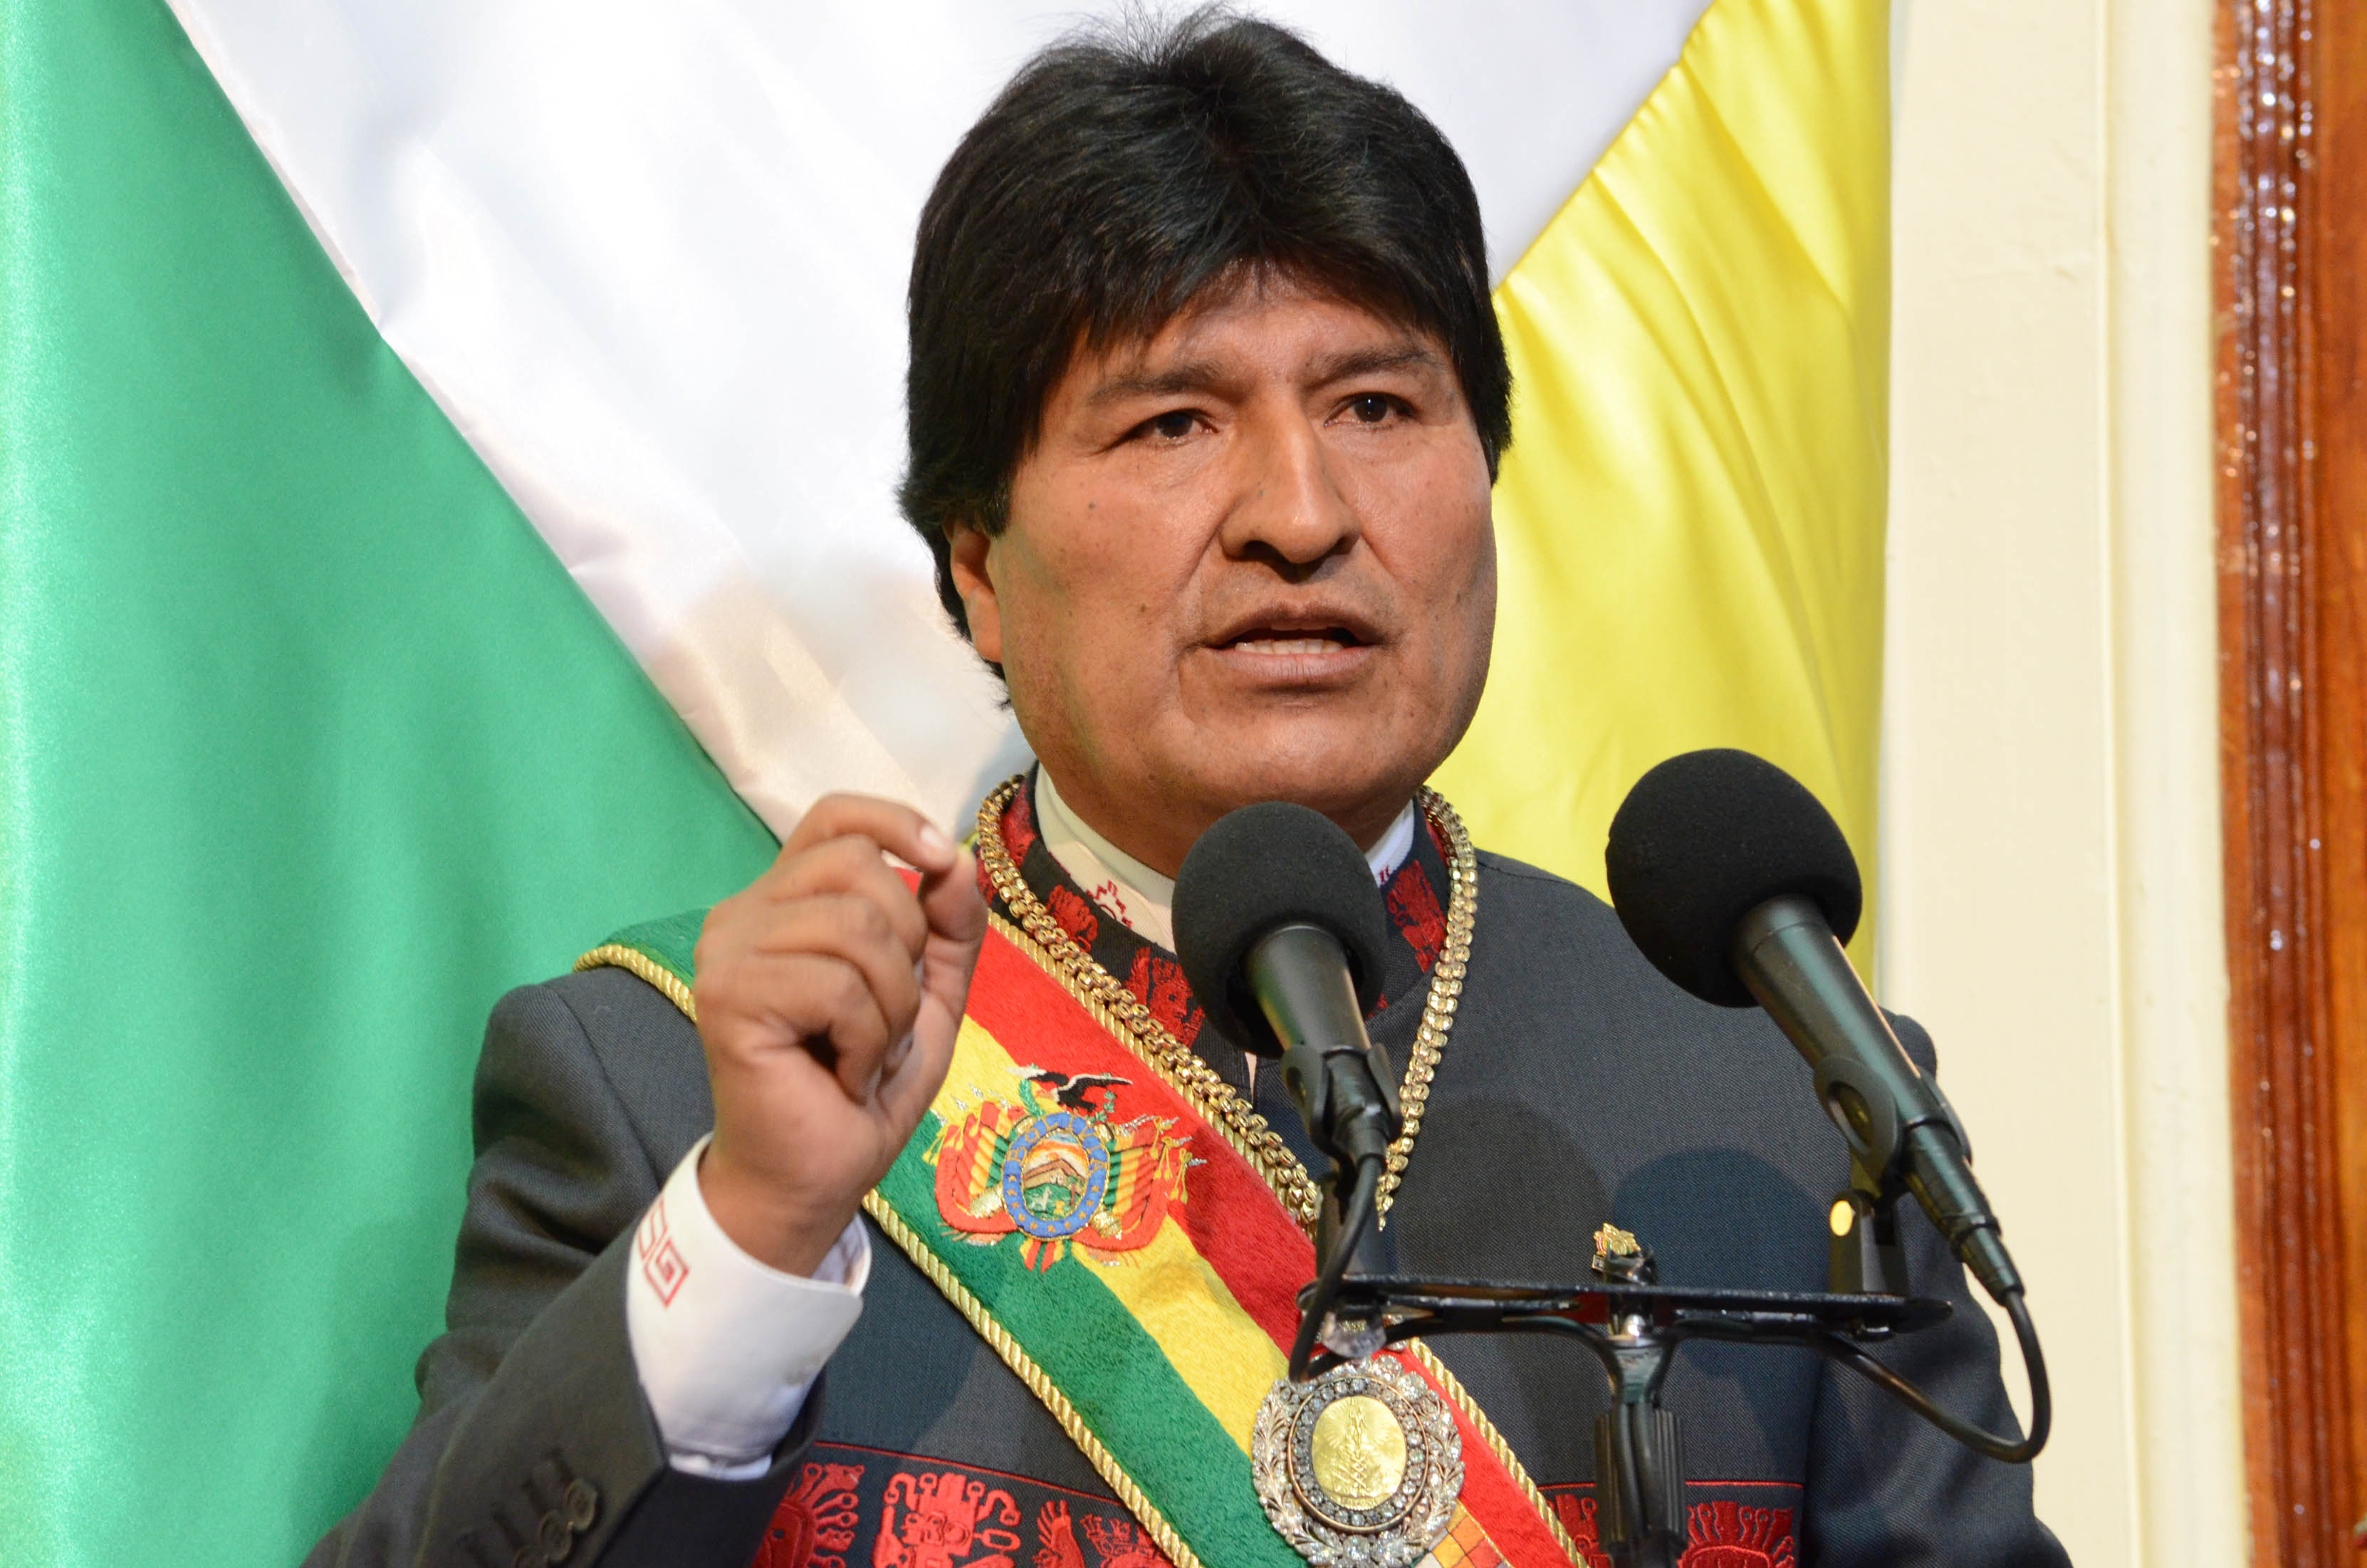 En un acto que se realizó en Palacio de Gobierno, Morales pidió a su nuevo ejecutar la Agenda Patriótica.